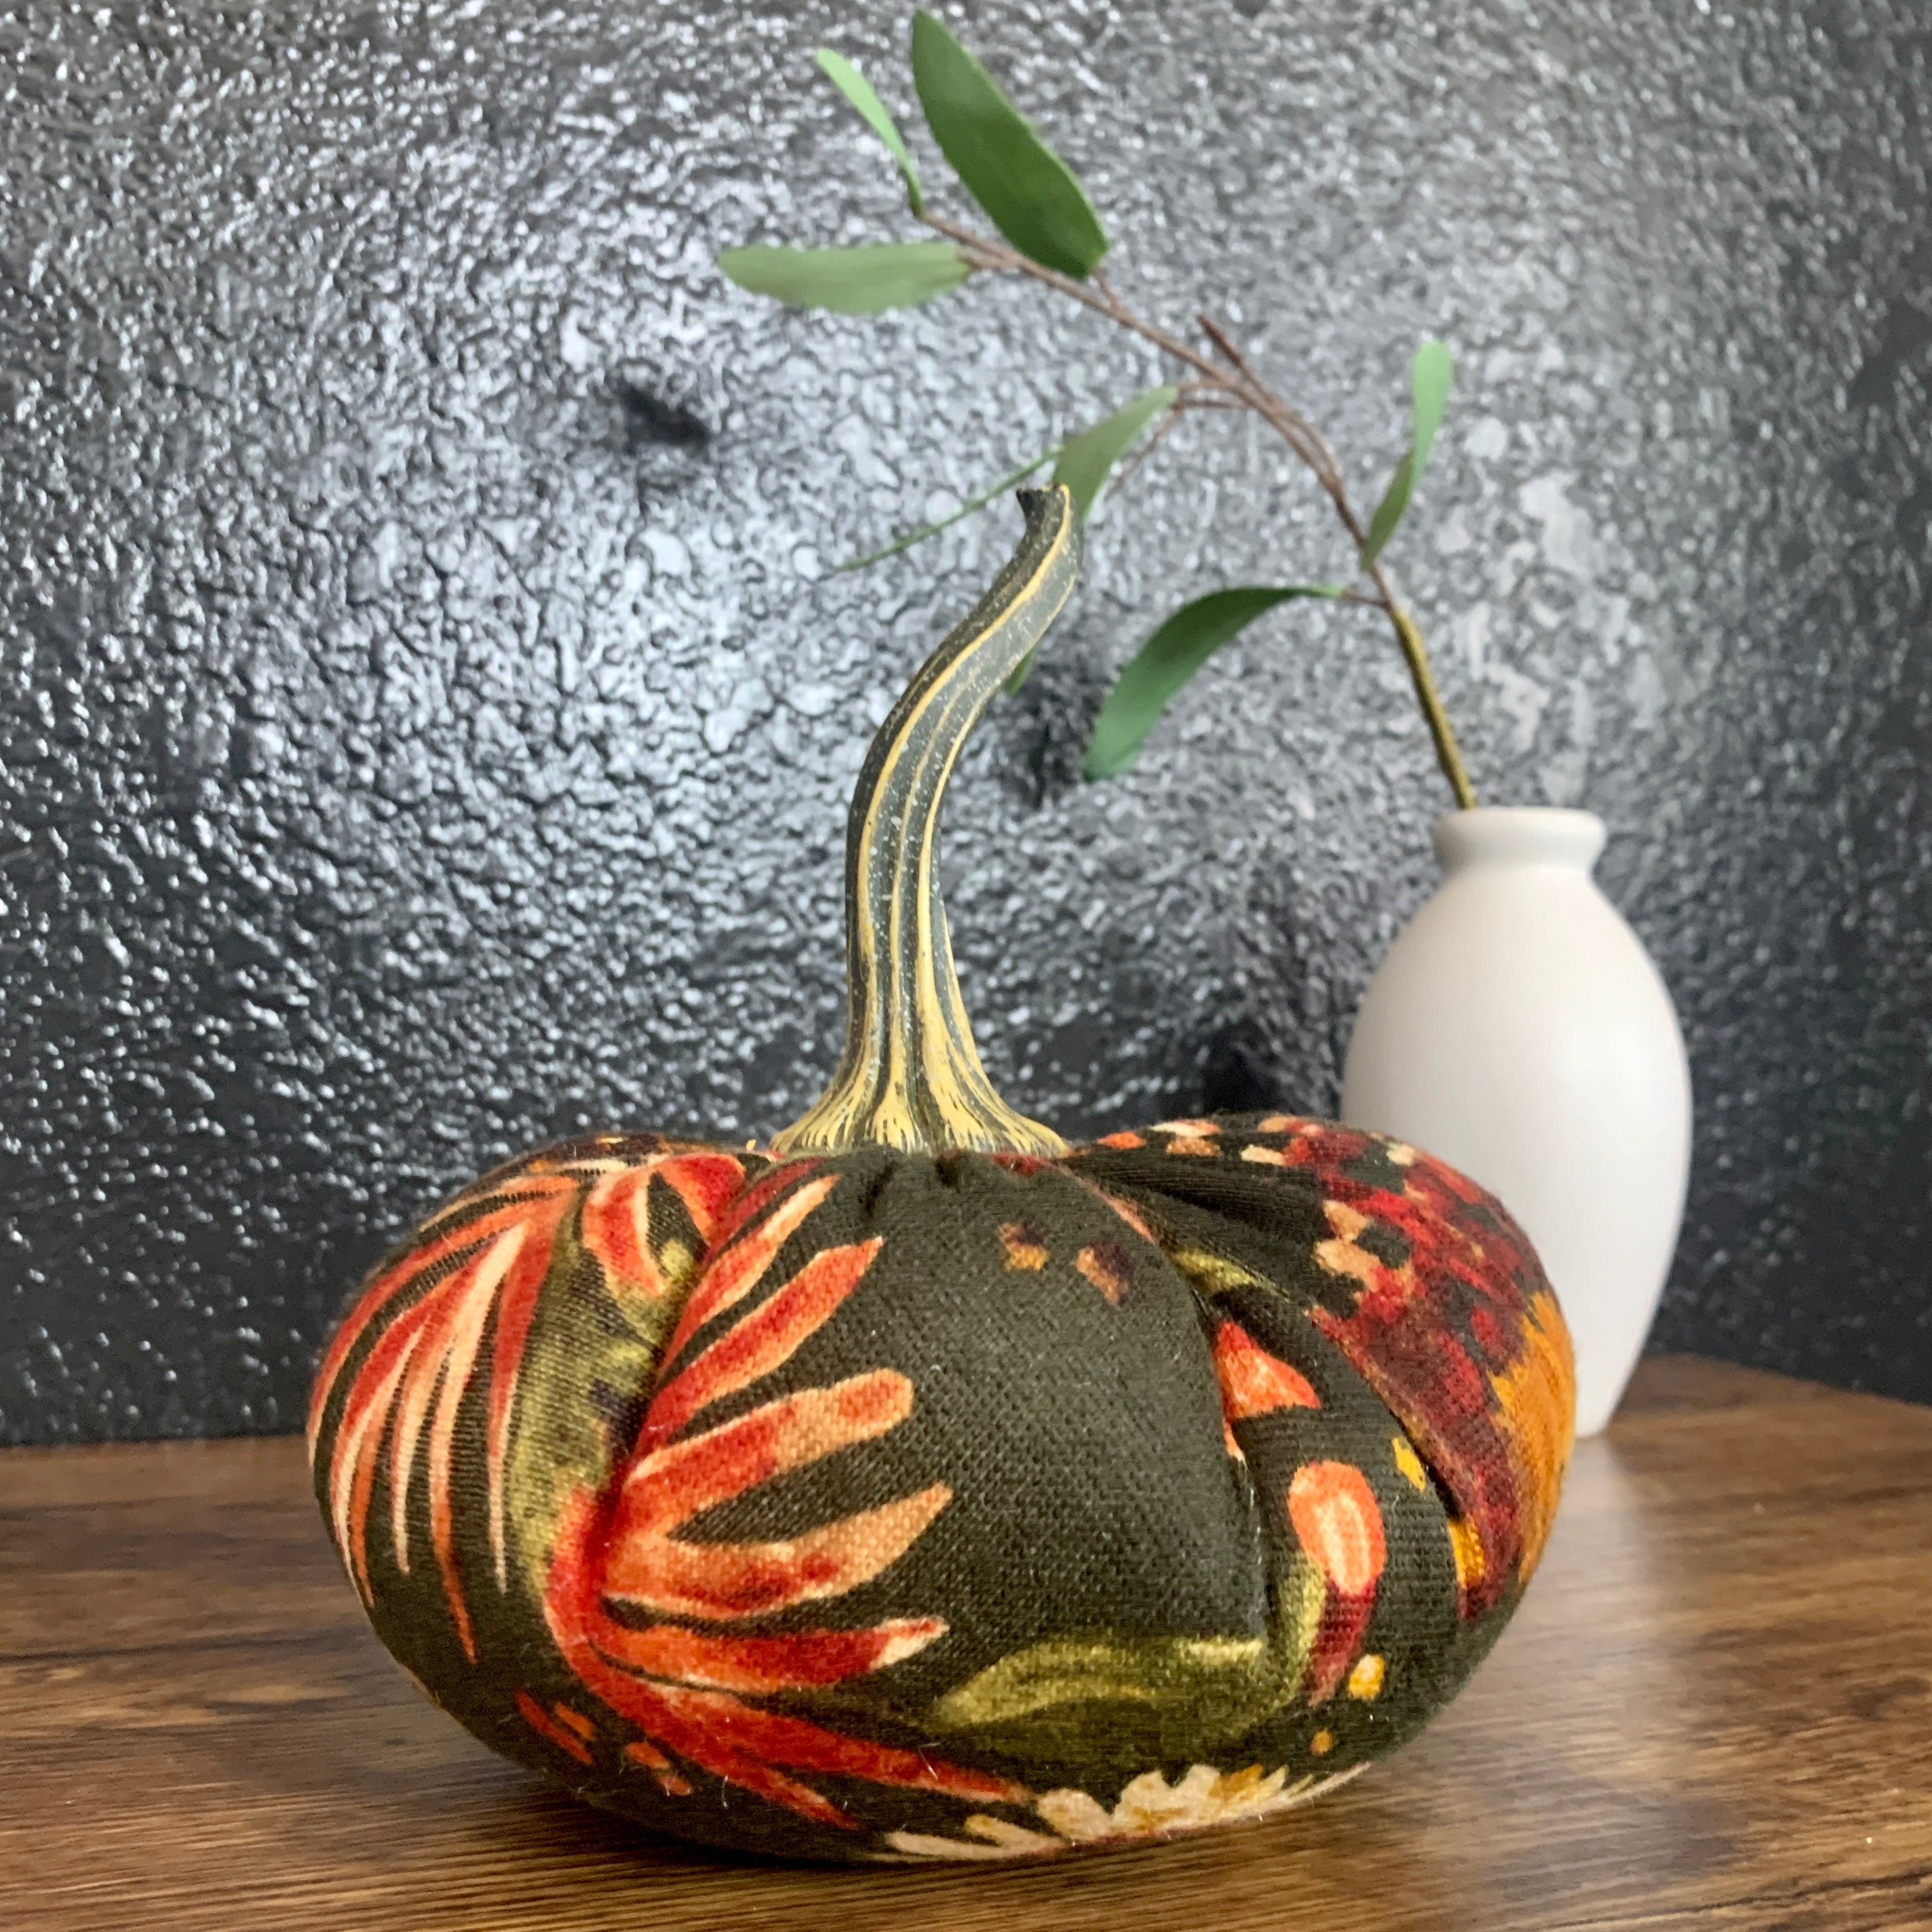 Handmade Velvet Pumpkins